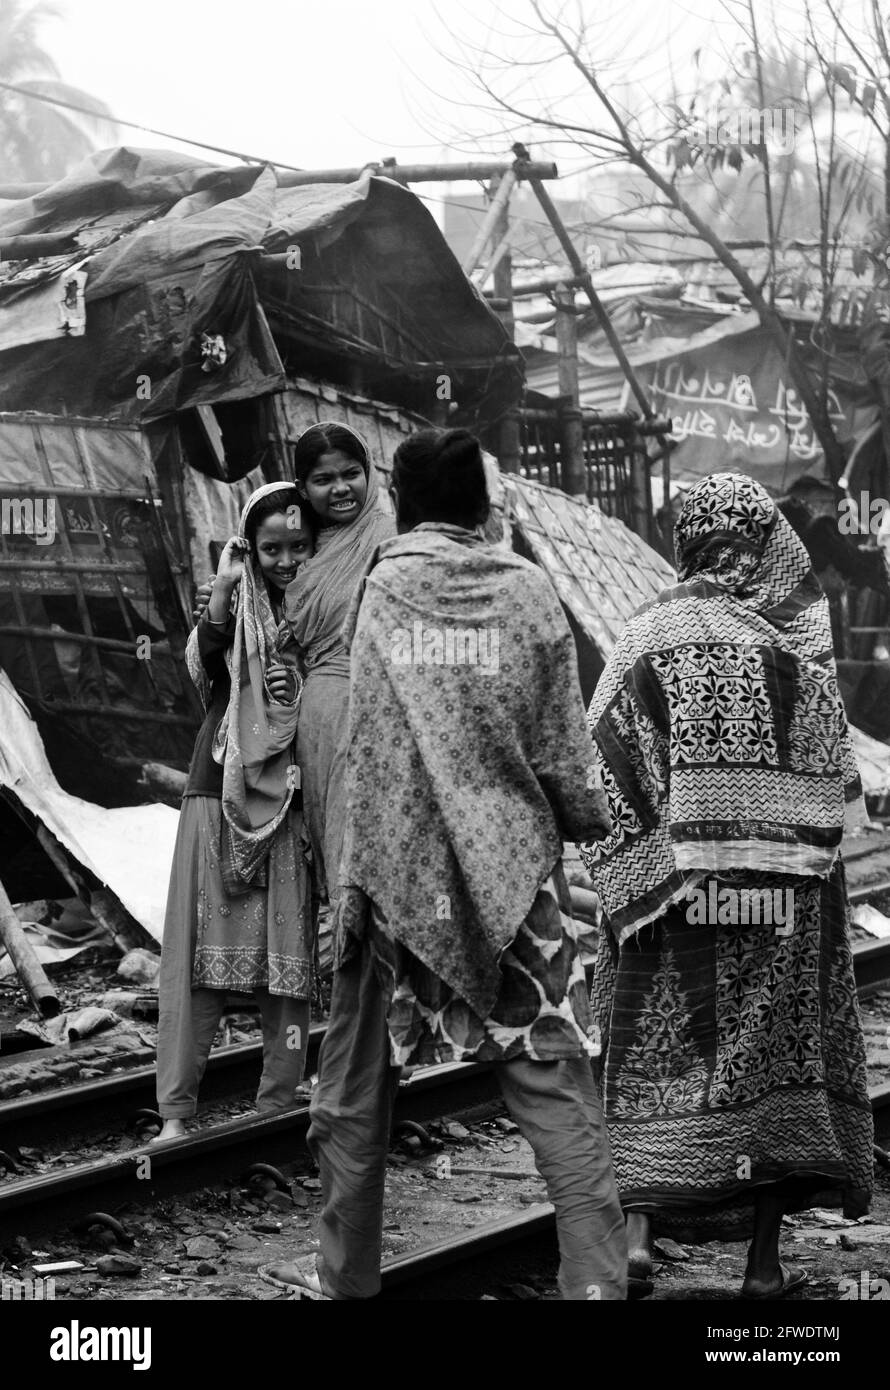 Pauvres bangladais vivant près de la voie ferrée dans le quartier de Karwan à Dhaka, au Bangladesh. Banque D'Images